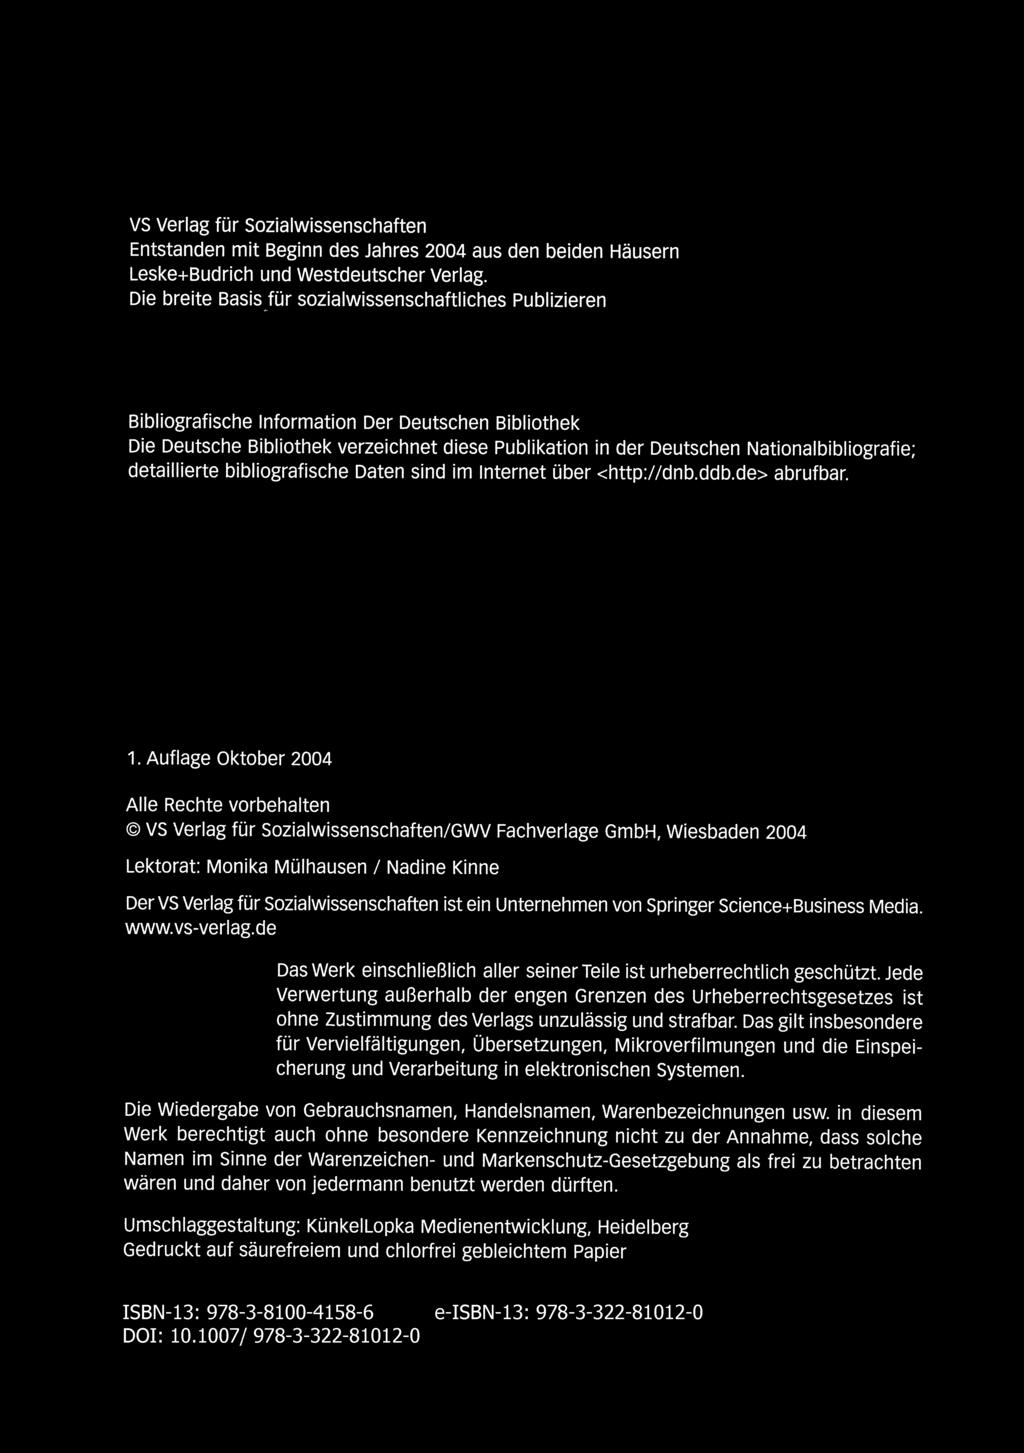 + VI VERLAG FO", SOZIALWISSENSCHAFTEN VS Verlag für Sozialwissenschaften Entstanden mit Beginn des Jahres 2004 aus den bei den Häusern Leske+Budrich und Westdeutscher Verlag.